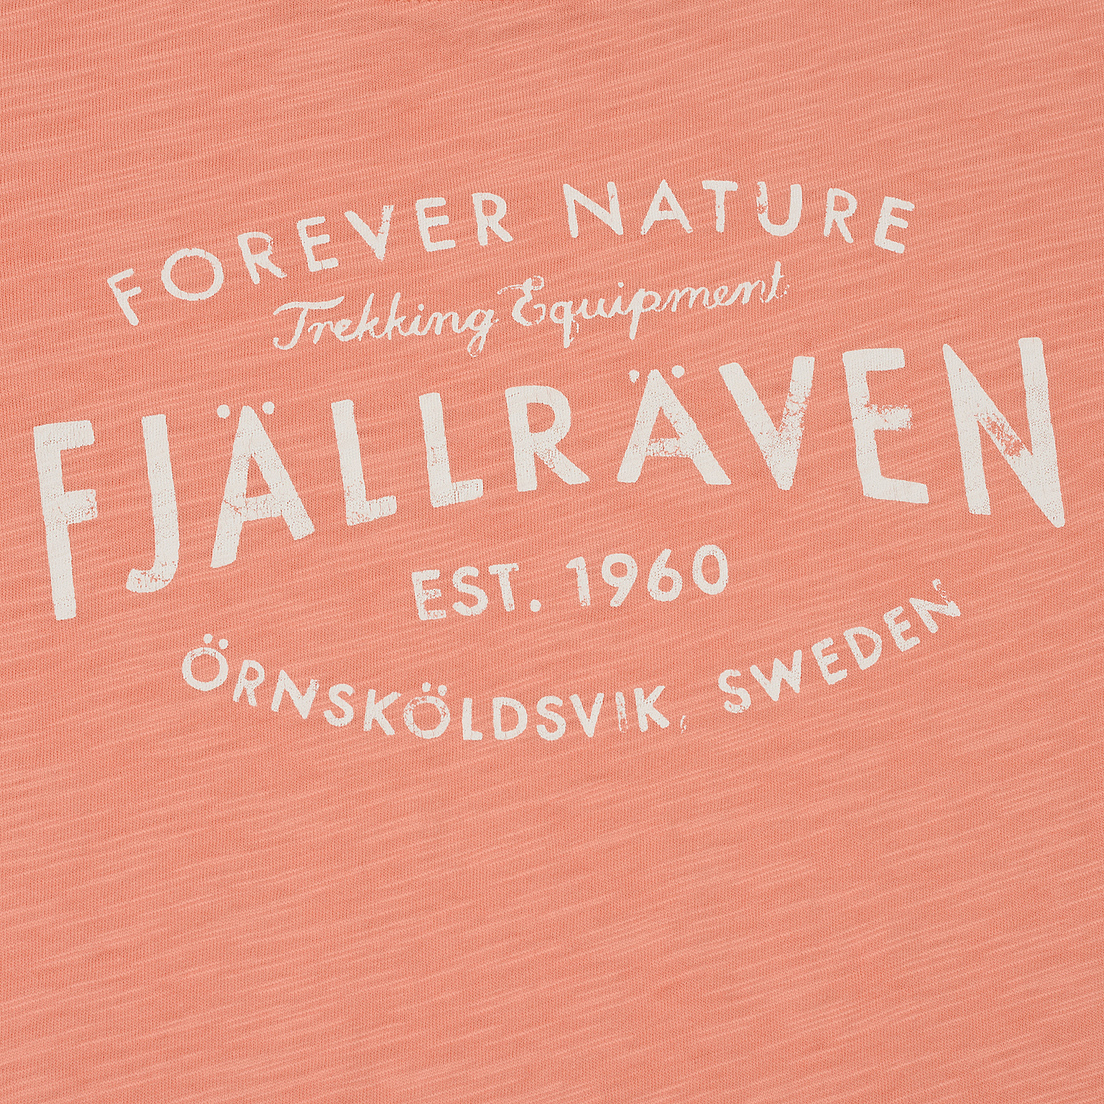 Fjallraven Женская футболка Fjallraven Est. 1960